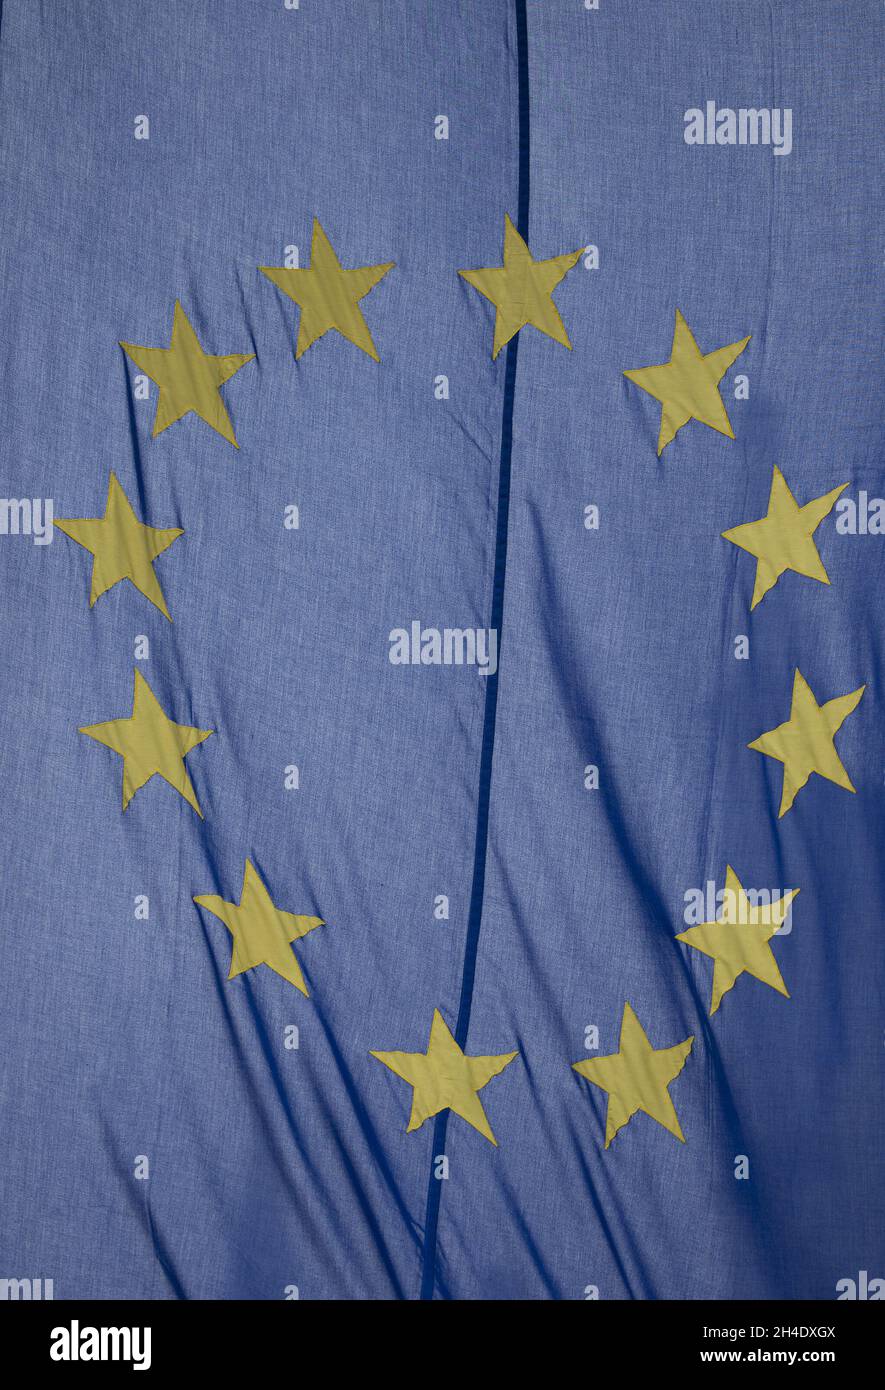 La bandiera europea vola di fronte al Big ben, dove le bandiere dei 27 stati membri dell'UE sono state piazzate intorno a Parliament Square, Westminster, Londra, il giorno dell'Europa, che si tiene il 9 maggio di ogni anno per celebrare la pace e l'unità in Europa. Si celebra l'anniversario della storica "dichiarazione di chuman”, che è considerata l'inizio di quella che ora è l'Unione europea. Foto datata: Martedì 9 maggio 2017. Il credito fotografico deve essere: Isabel Infantes / EMPICS Entertainment. Foto Stock